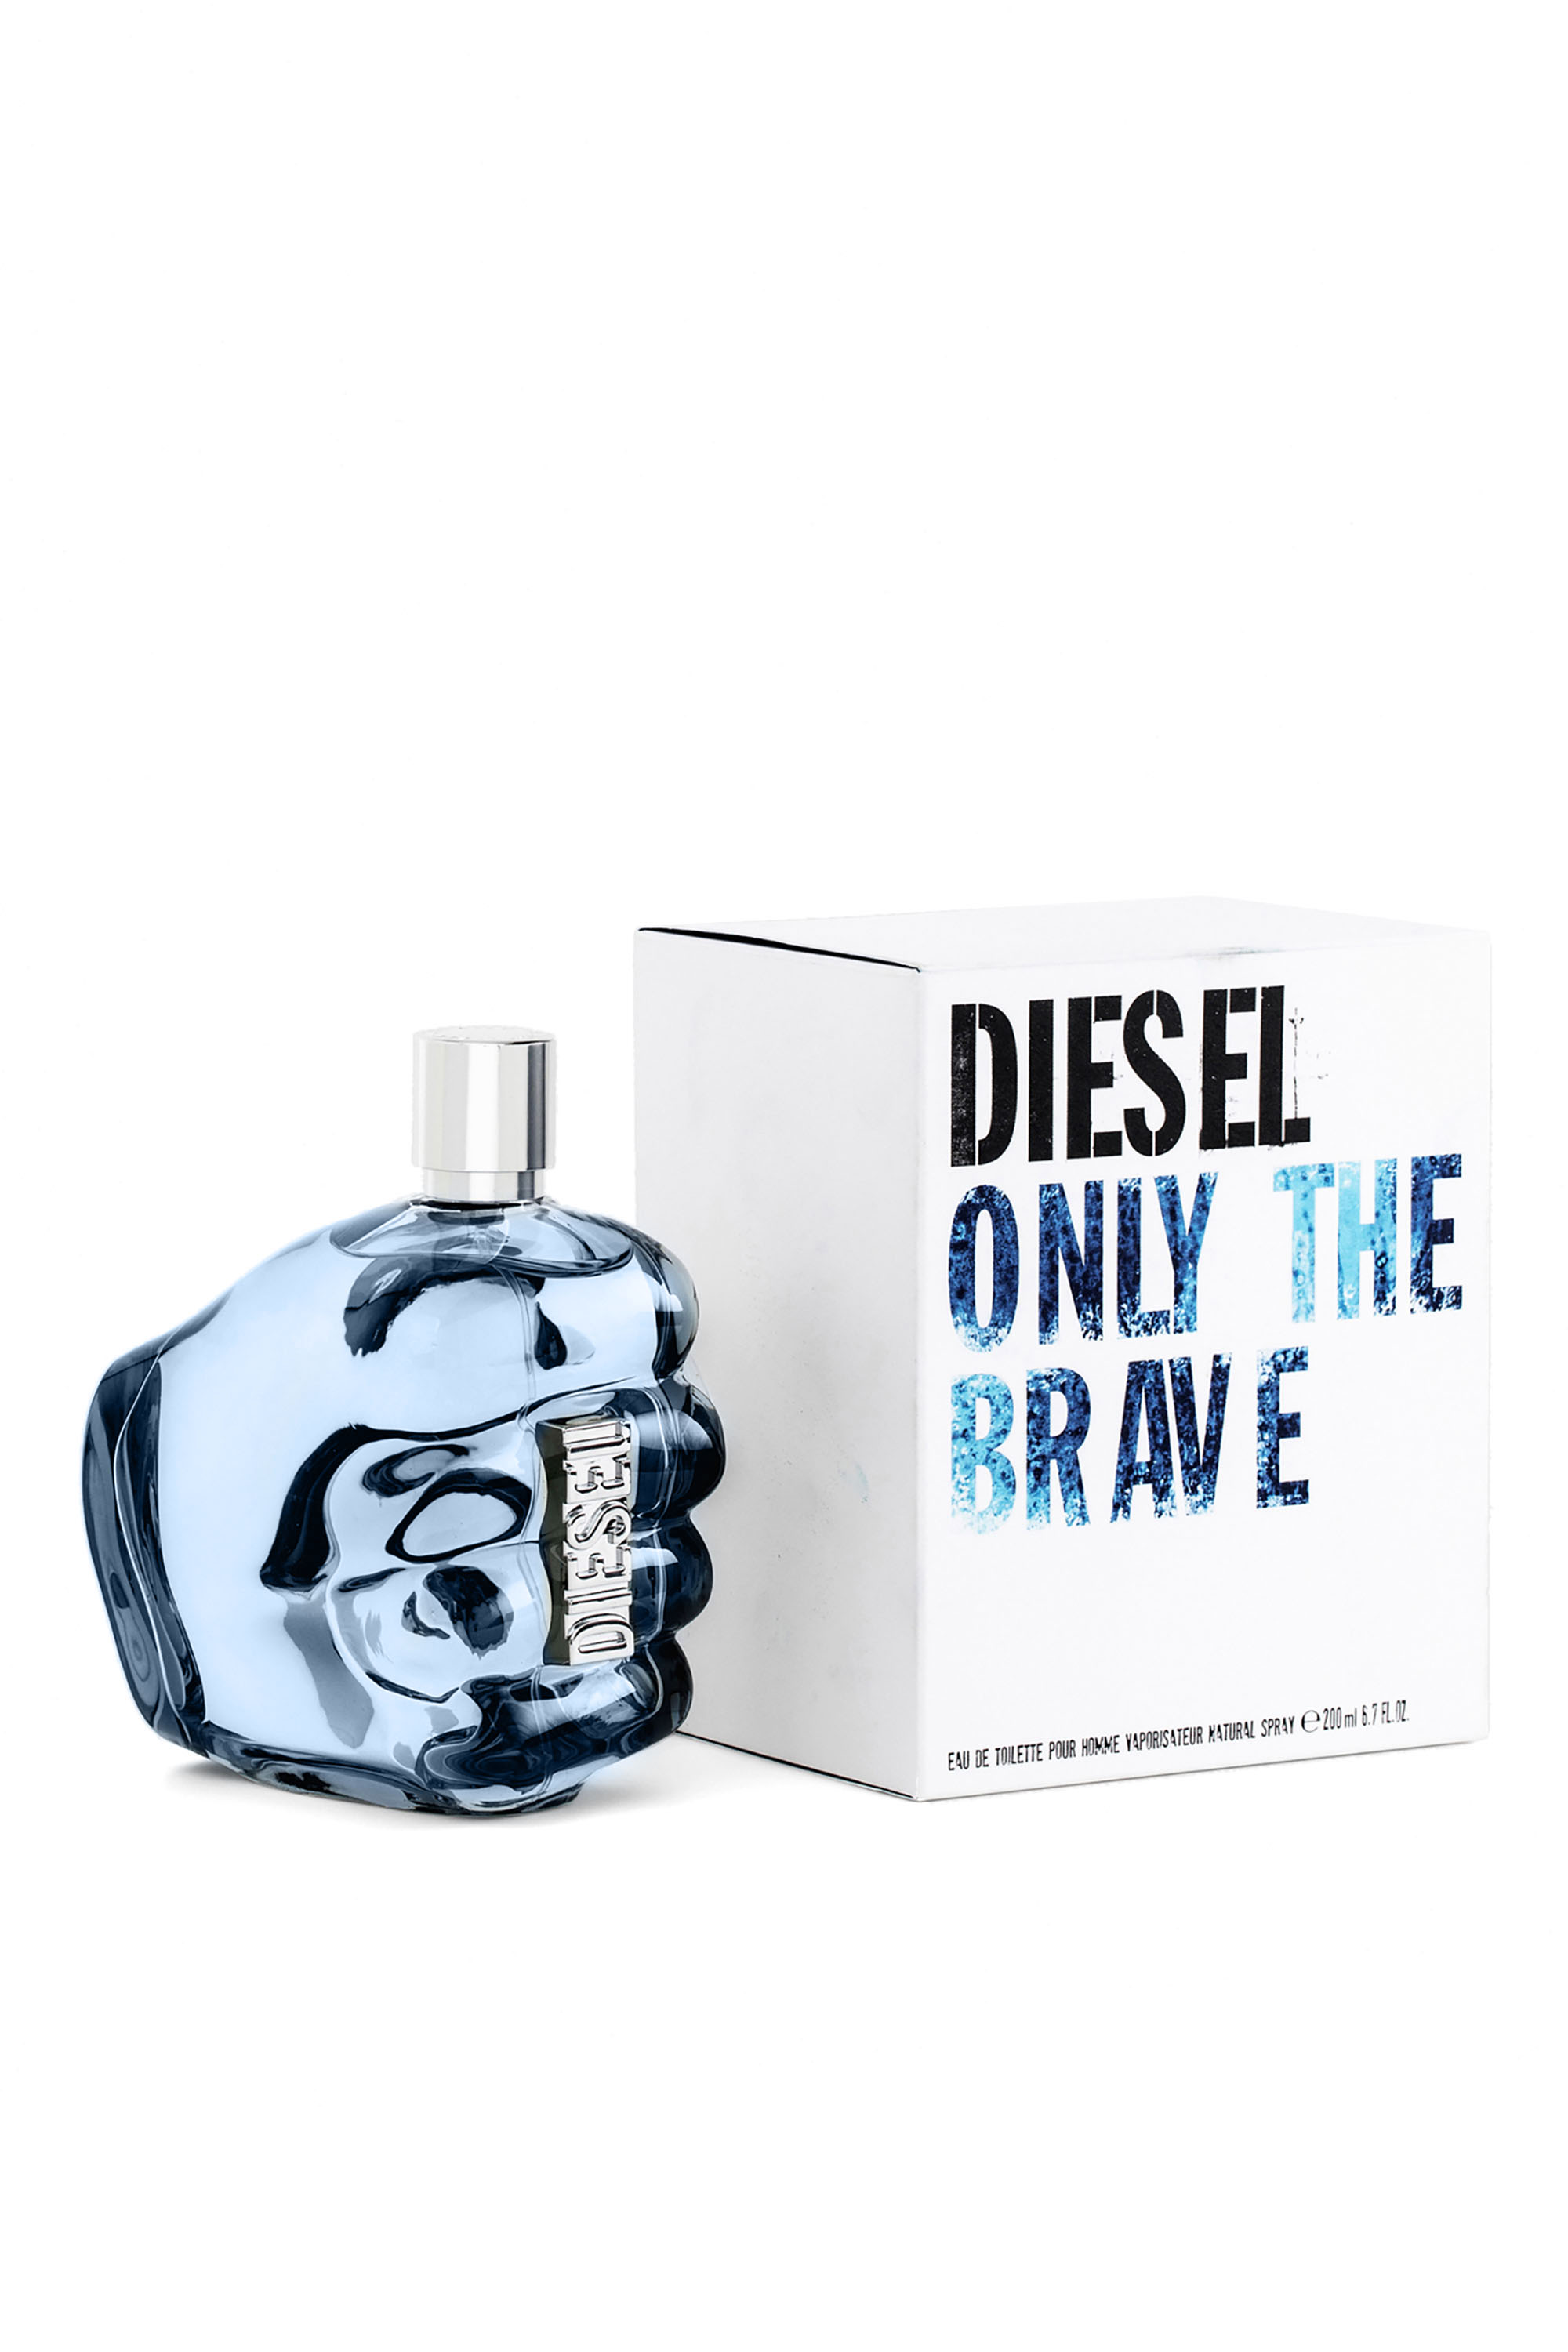 Diesel - OTB EDT 200 ML, Man Only The Brave 200ml, 6.7 FL.OZ., Eau de Toilette in Blue - Image 2